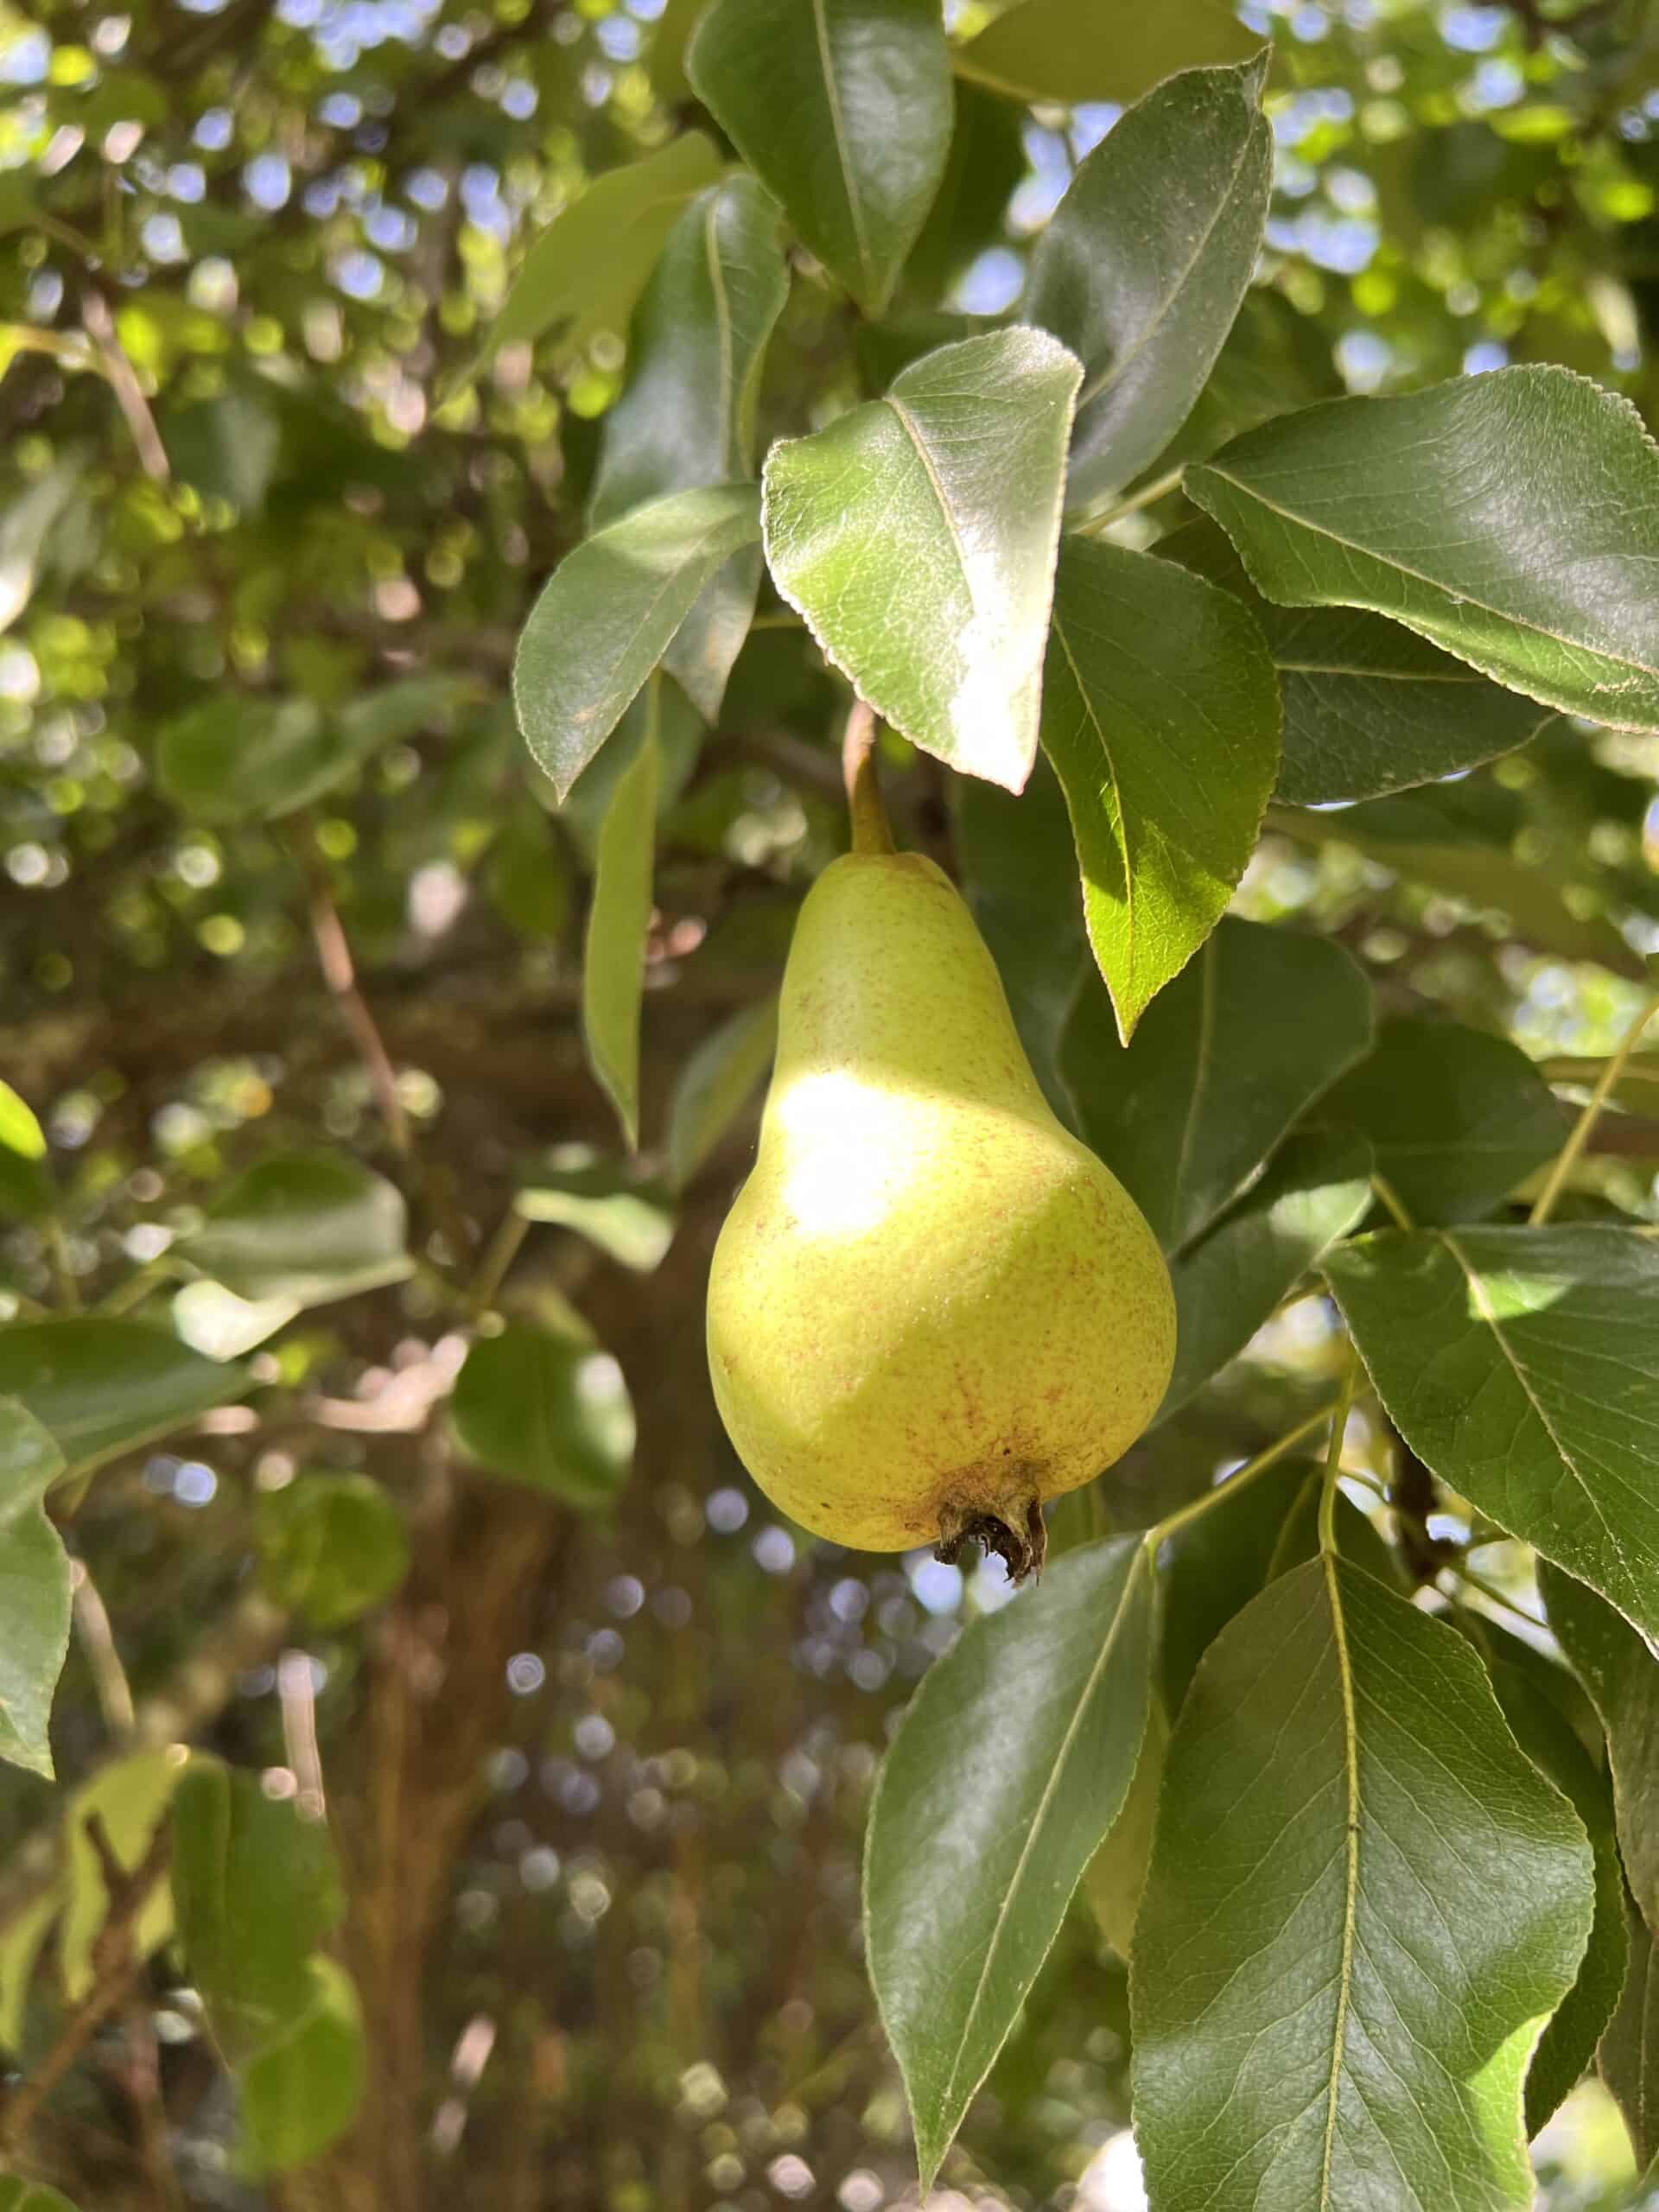 Jan's pears